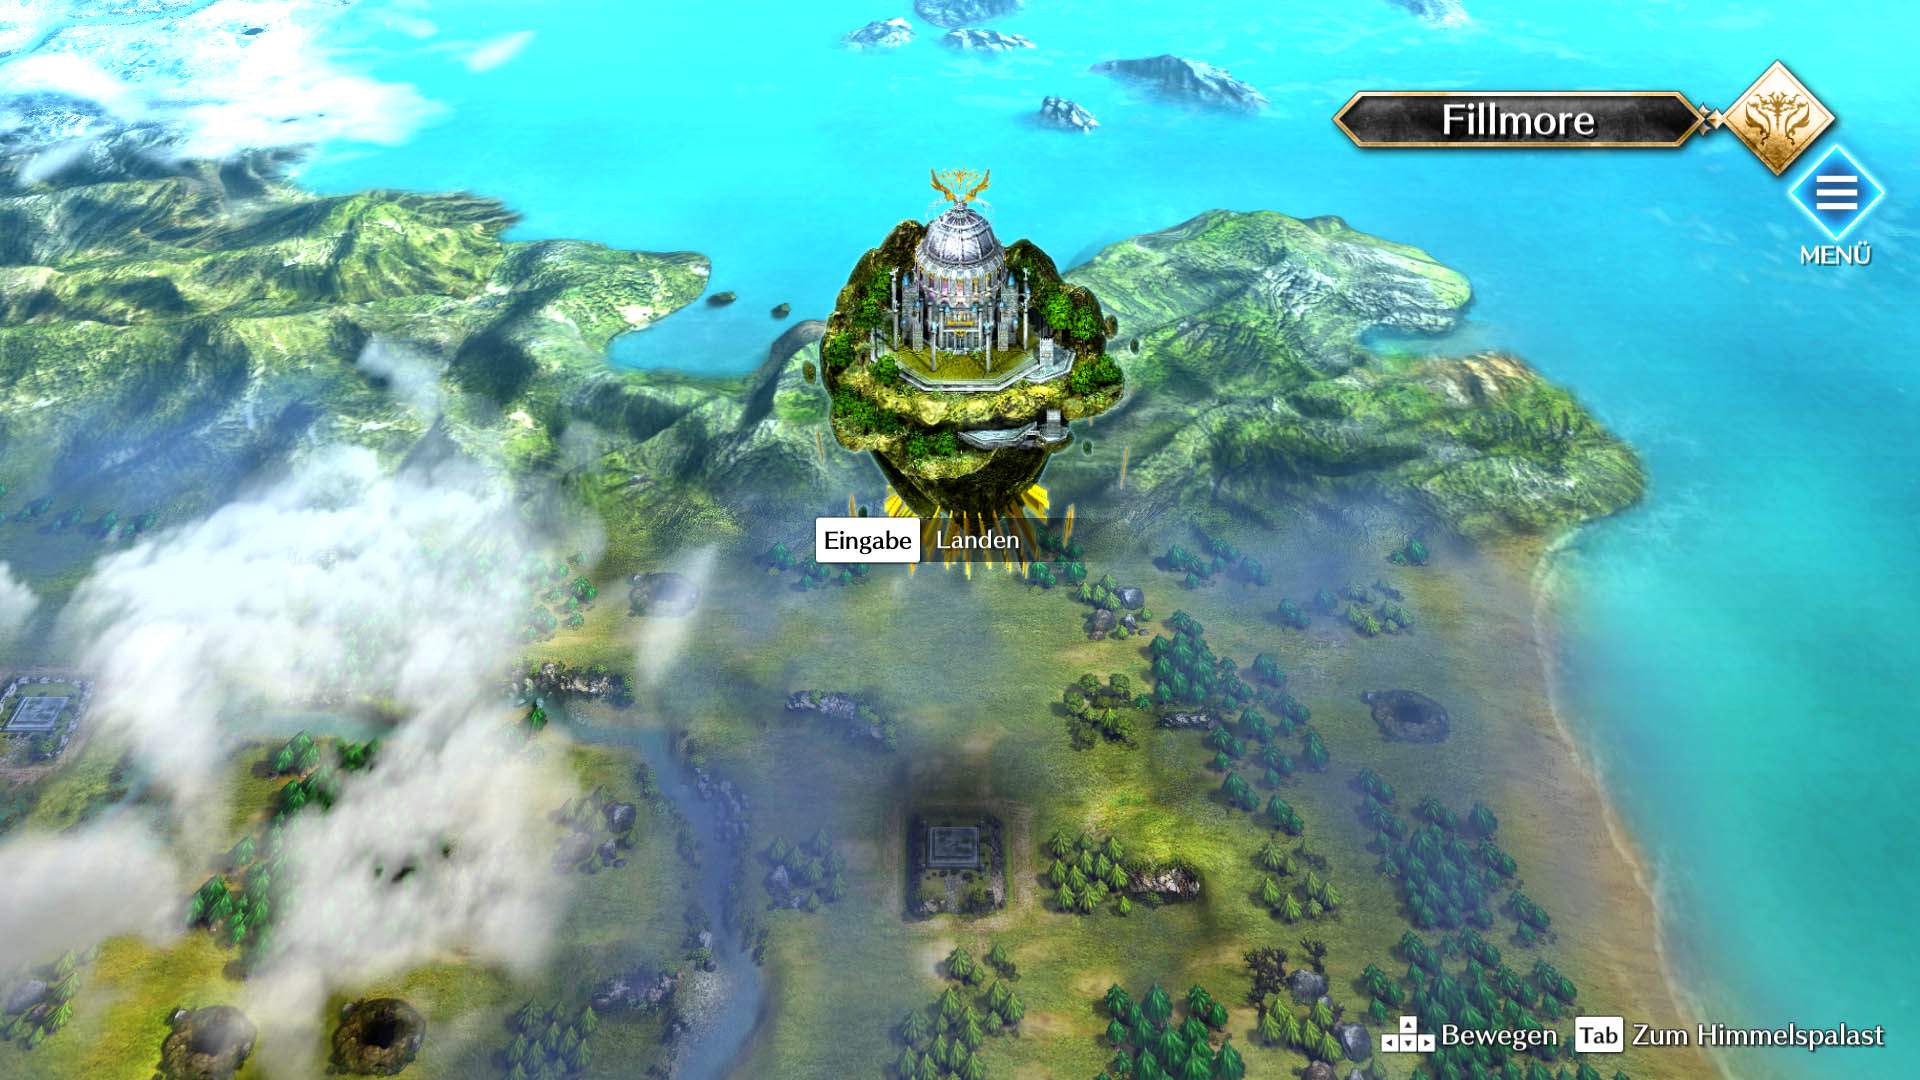 Gameplay-Screenshot von Actraiser Renaissance, der den Himmelspalast auf einer Karte zeigt.